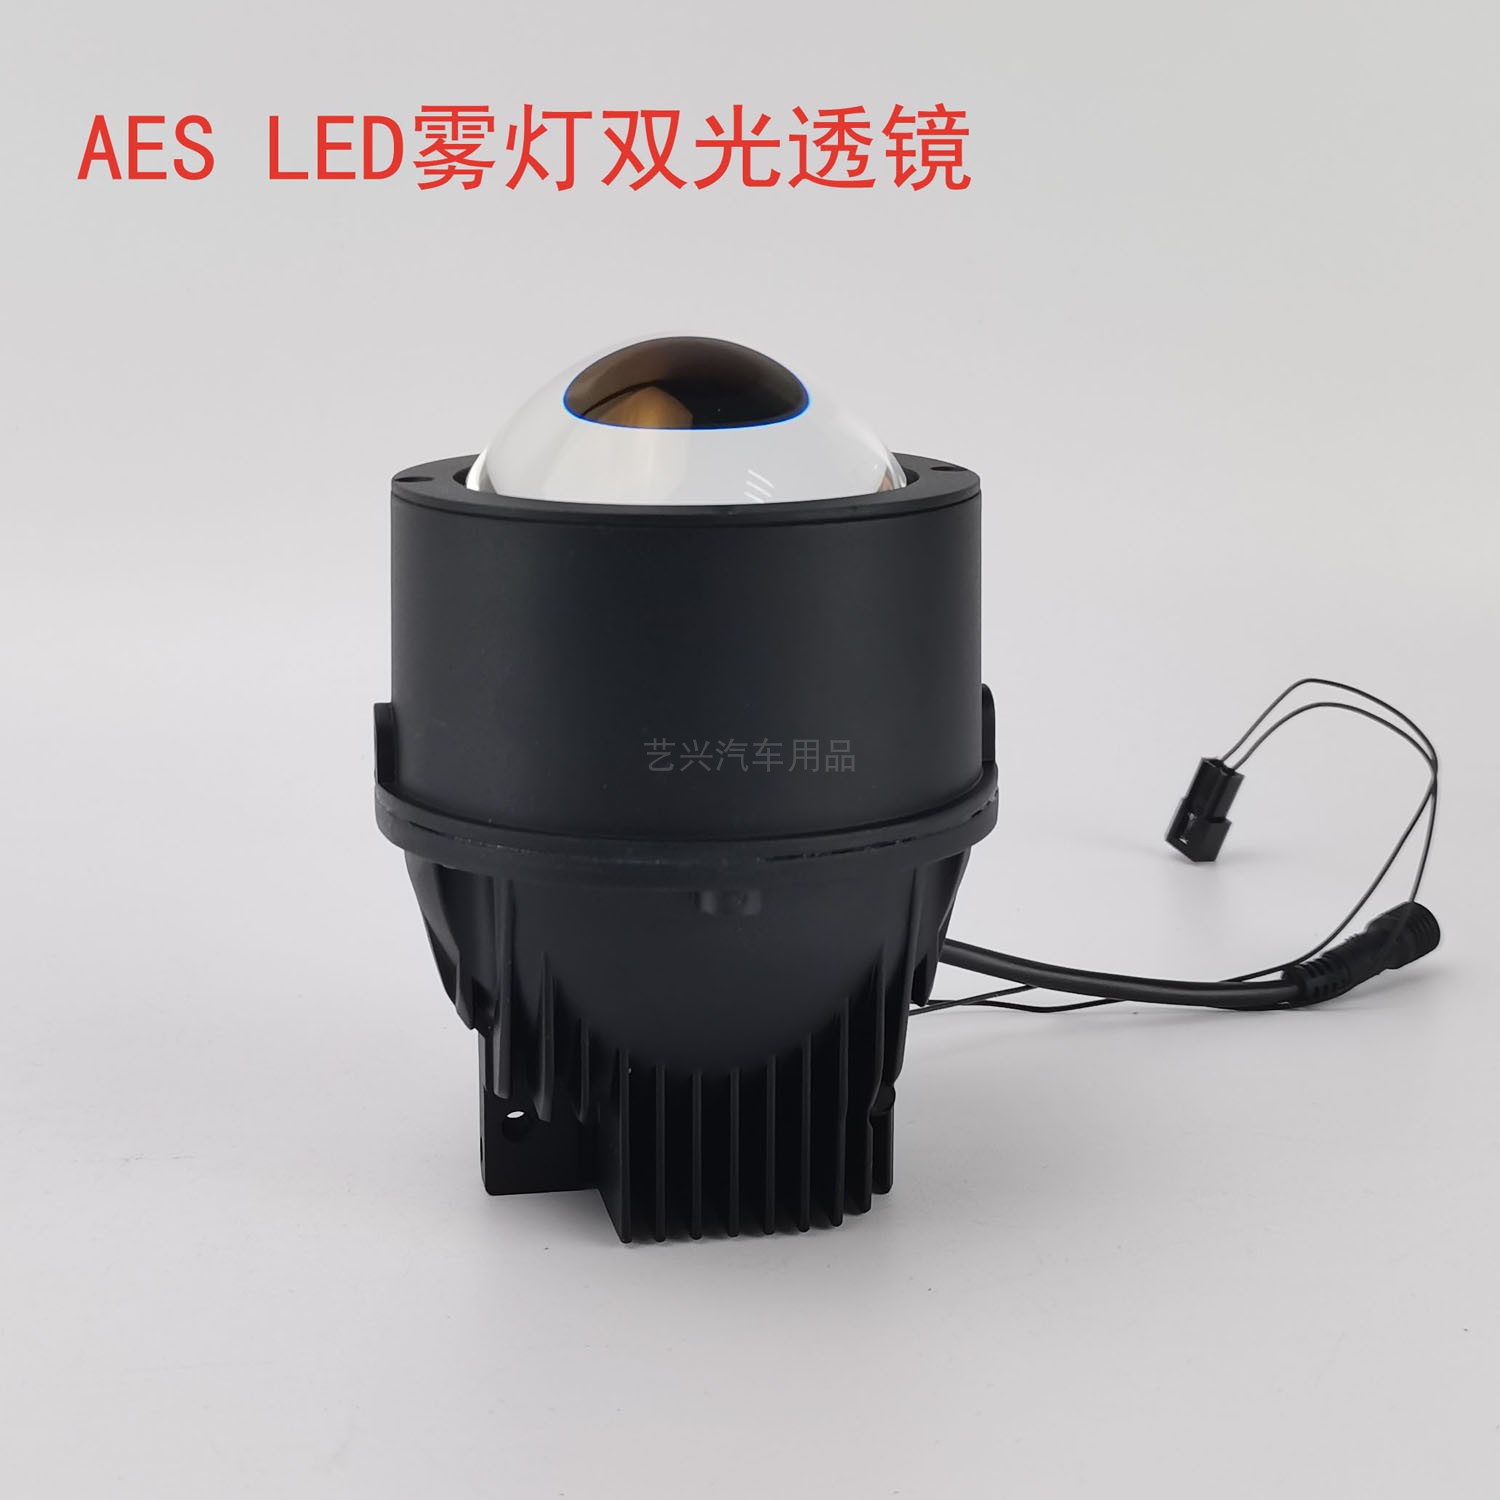 雾灯透镜AES搭配通用或丰田支架